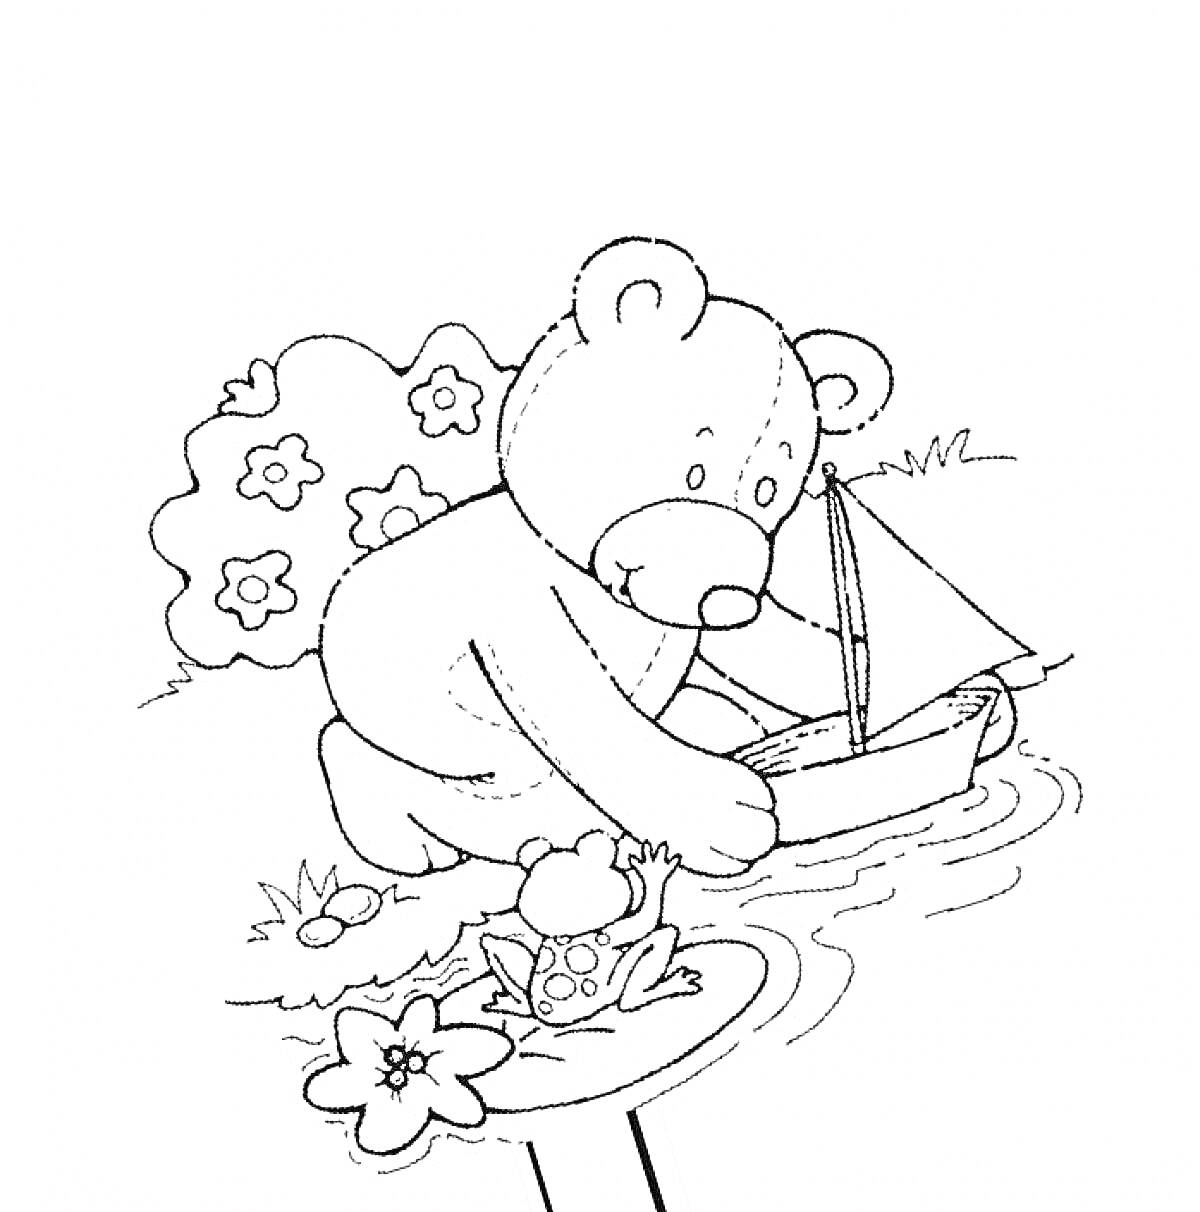 Раскраска Мишка Тедди играет с корабликом в пруду рядом с лягушкой и цветами